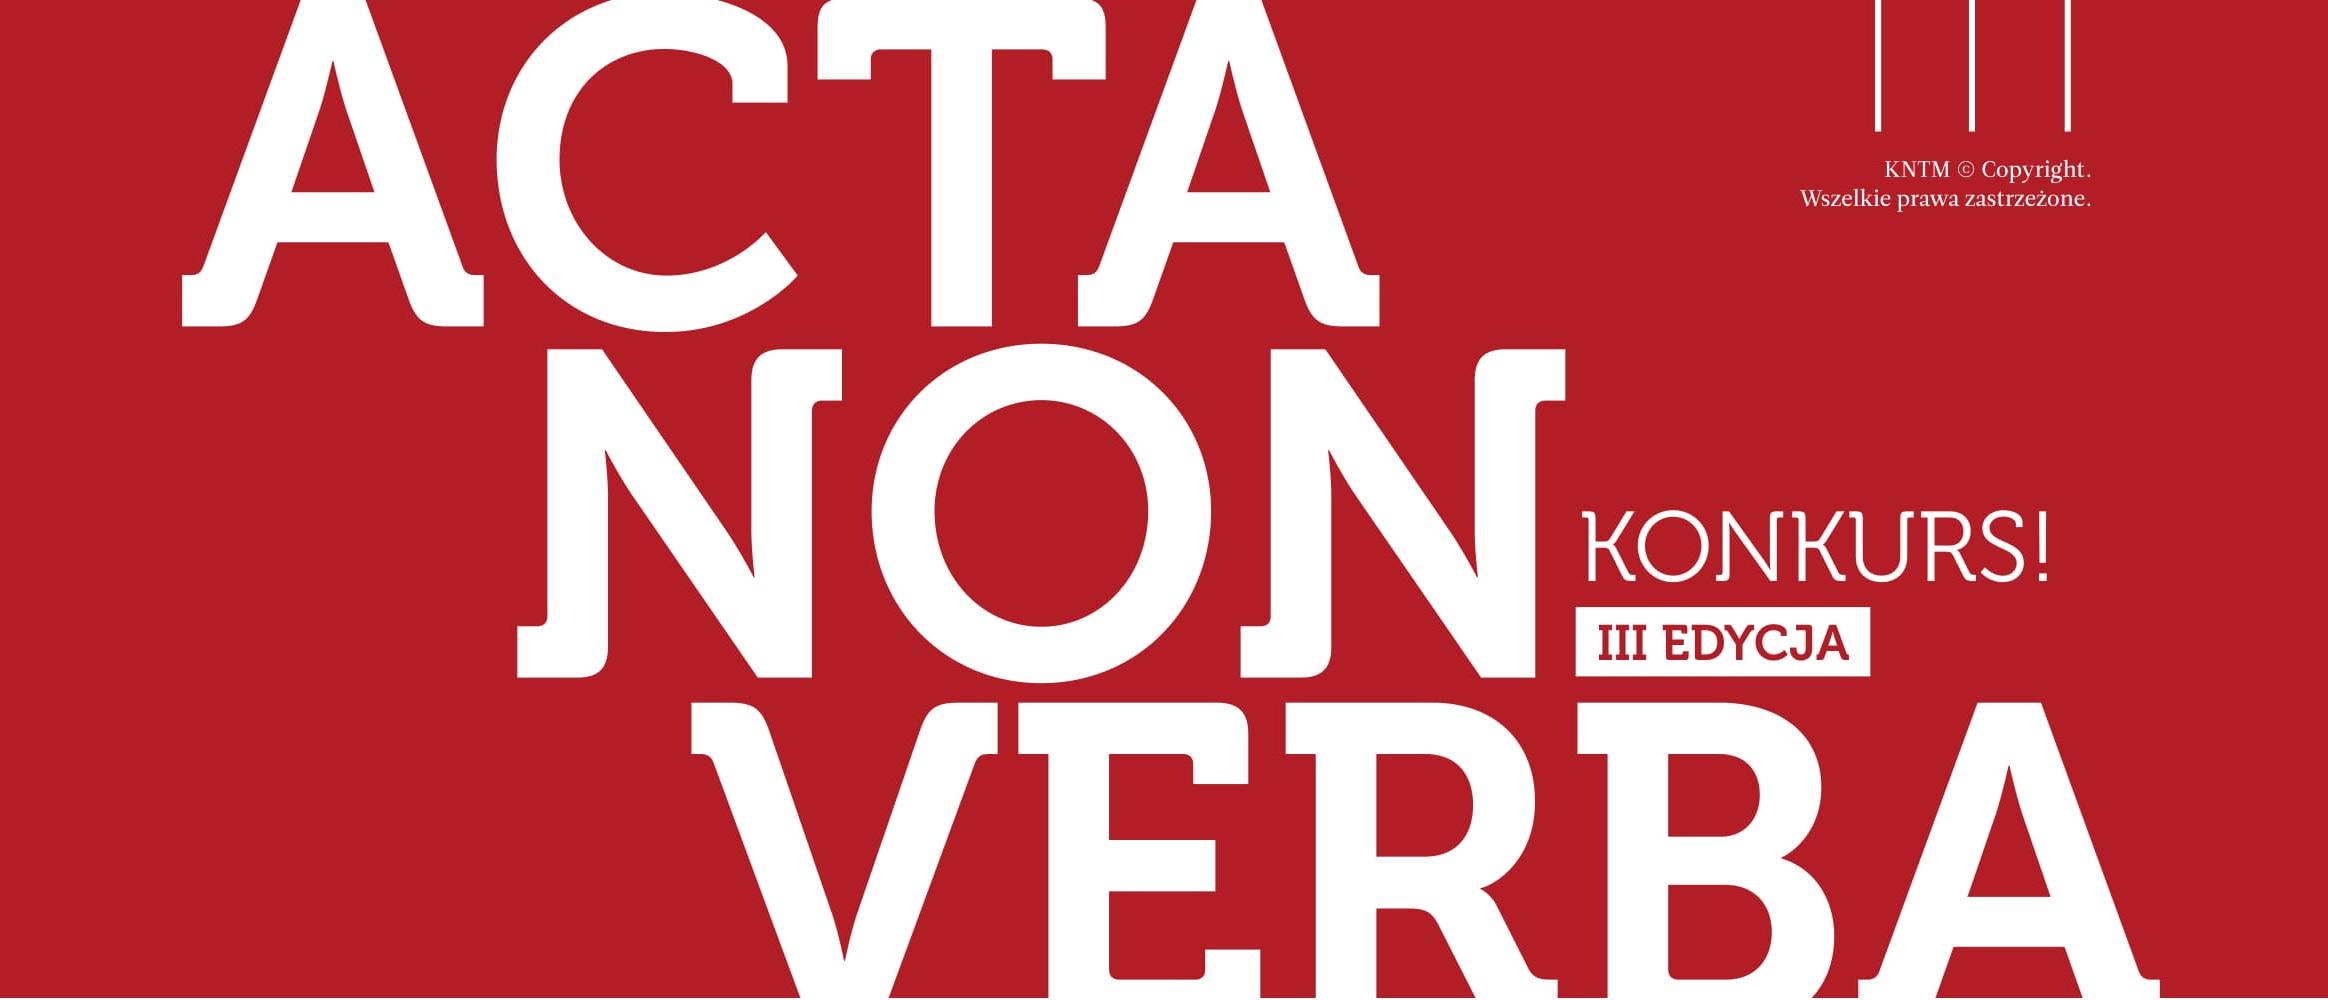 LOGO ACTA NON VERBA III edycja